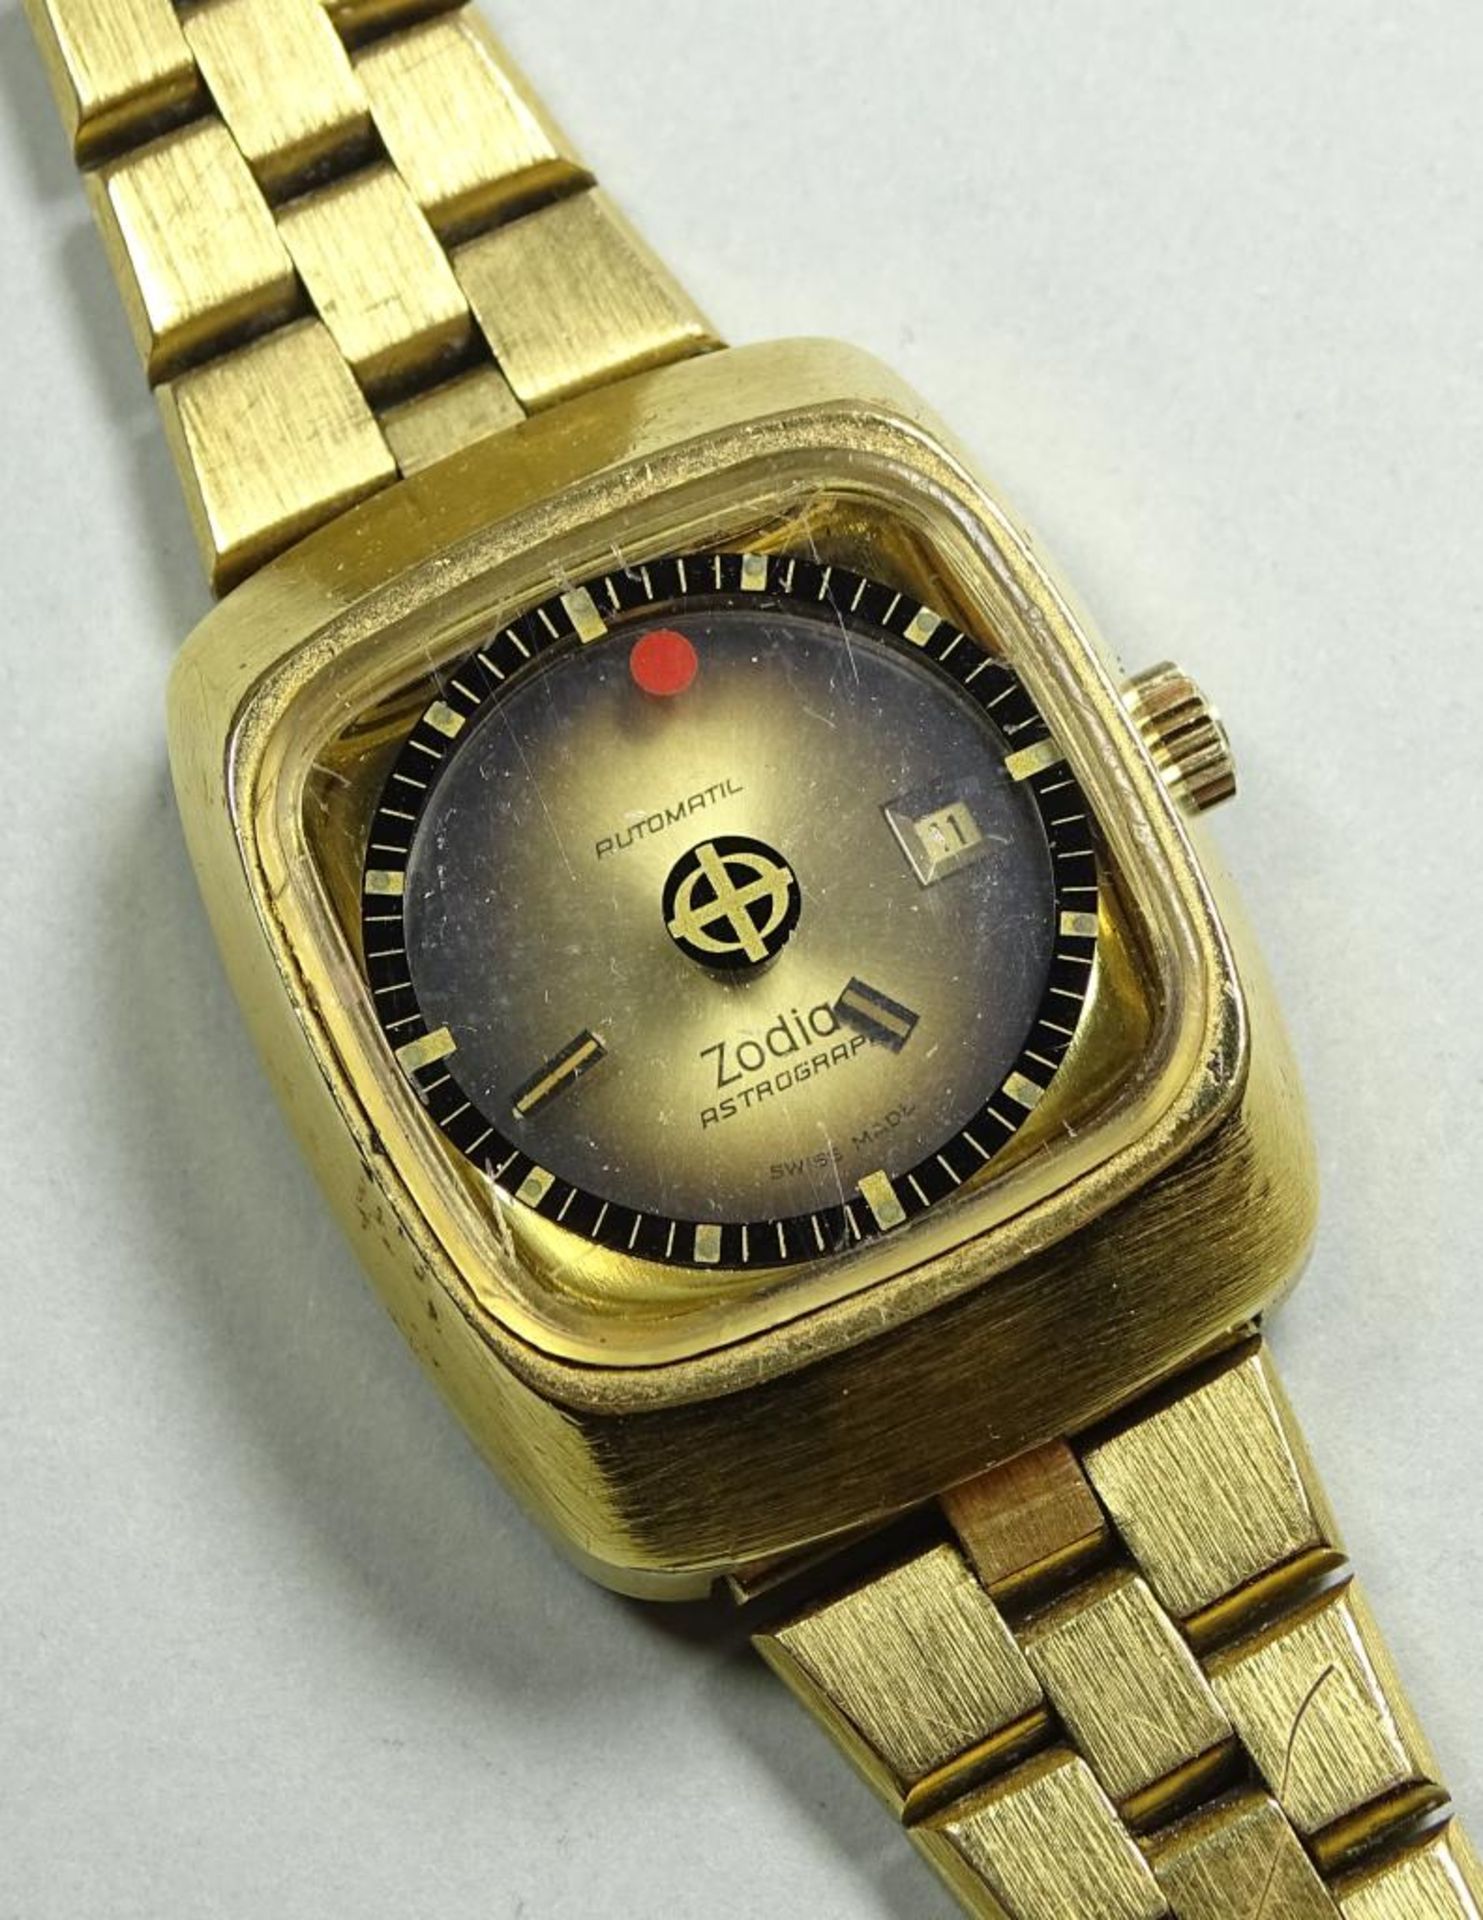 Seltene vintage Armbanduhr "Zodiac",Astrographic,automatic,Werk läuft,vergoldet,Gehäuse 33,6x27 - Bild 2 aus 4